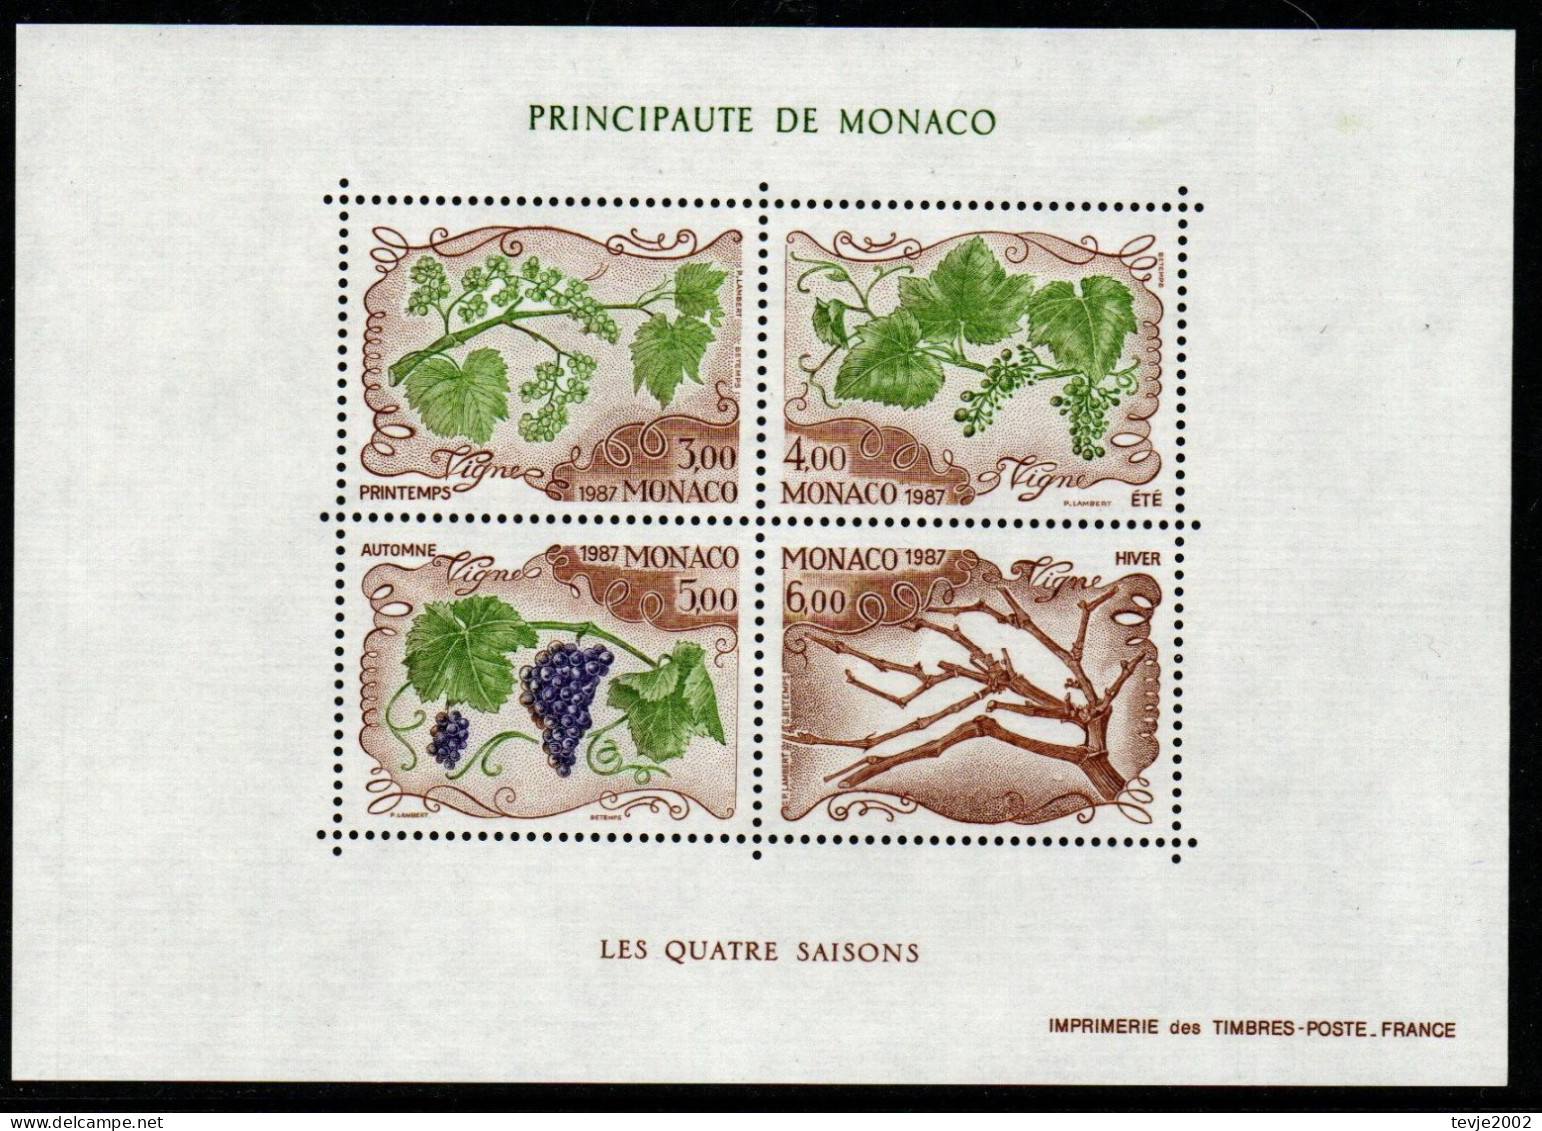 Monaco 1987 - Mi.Nr. Block 36 - Postfrisch MNH - Früchte Fruits Trauben Wein Vine - Fruits